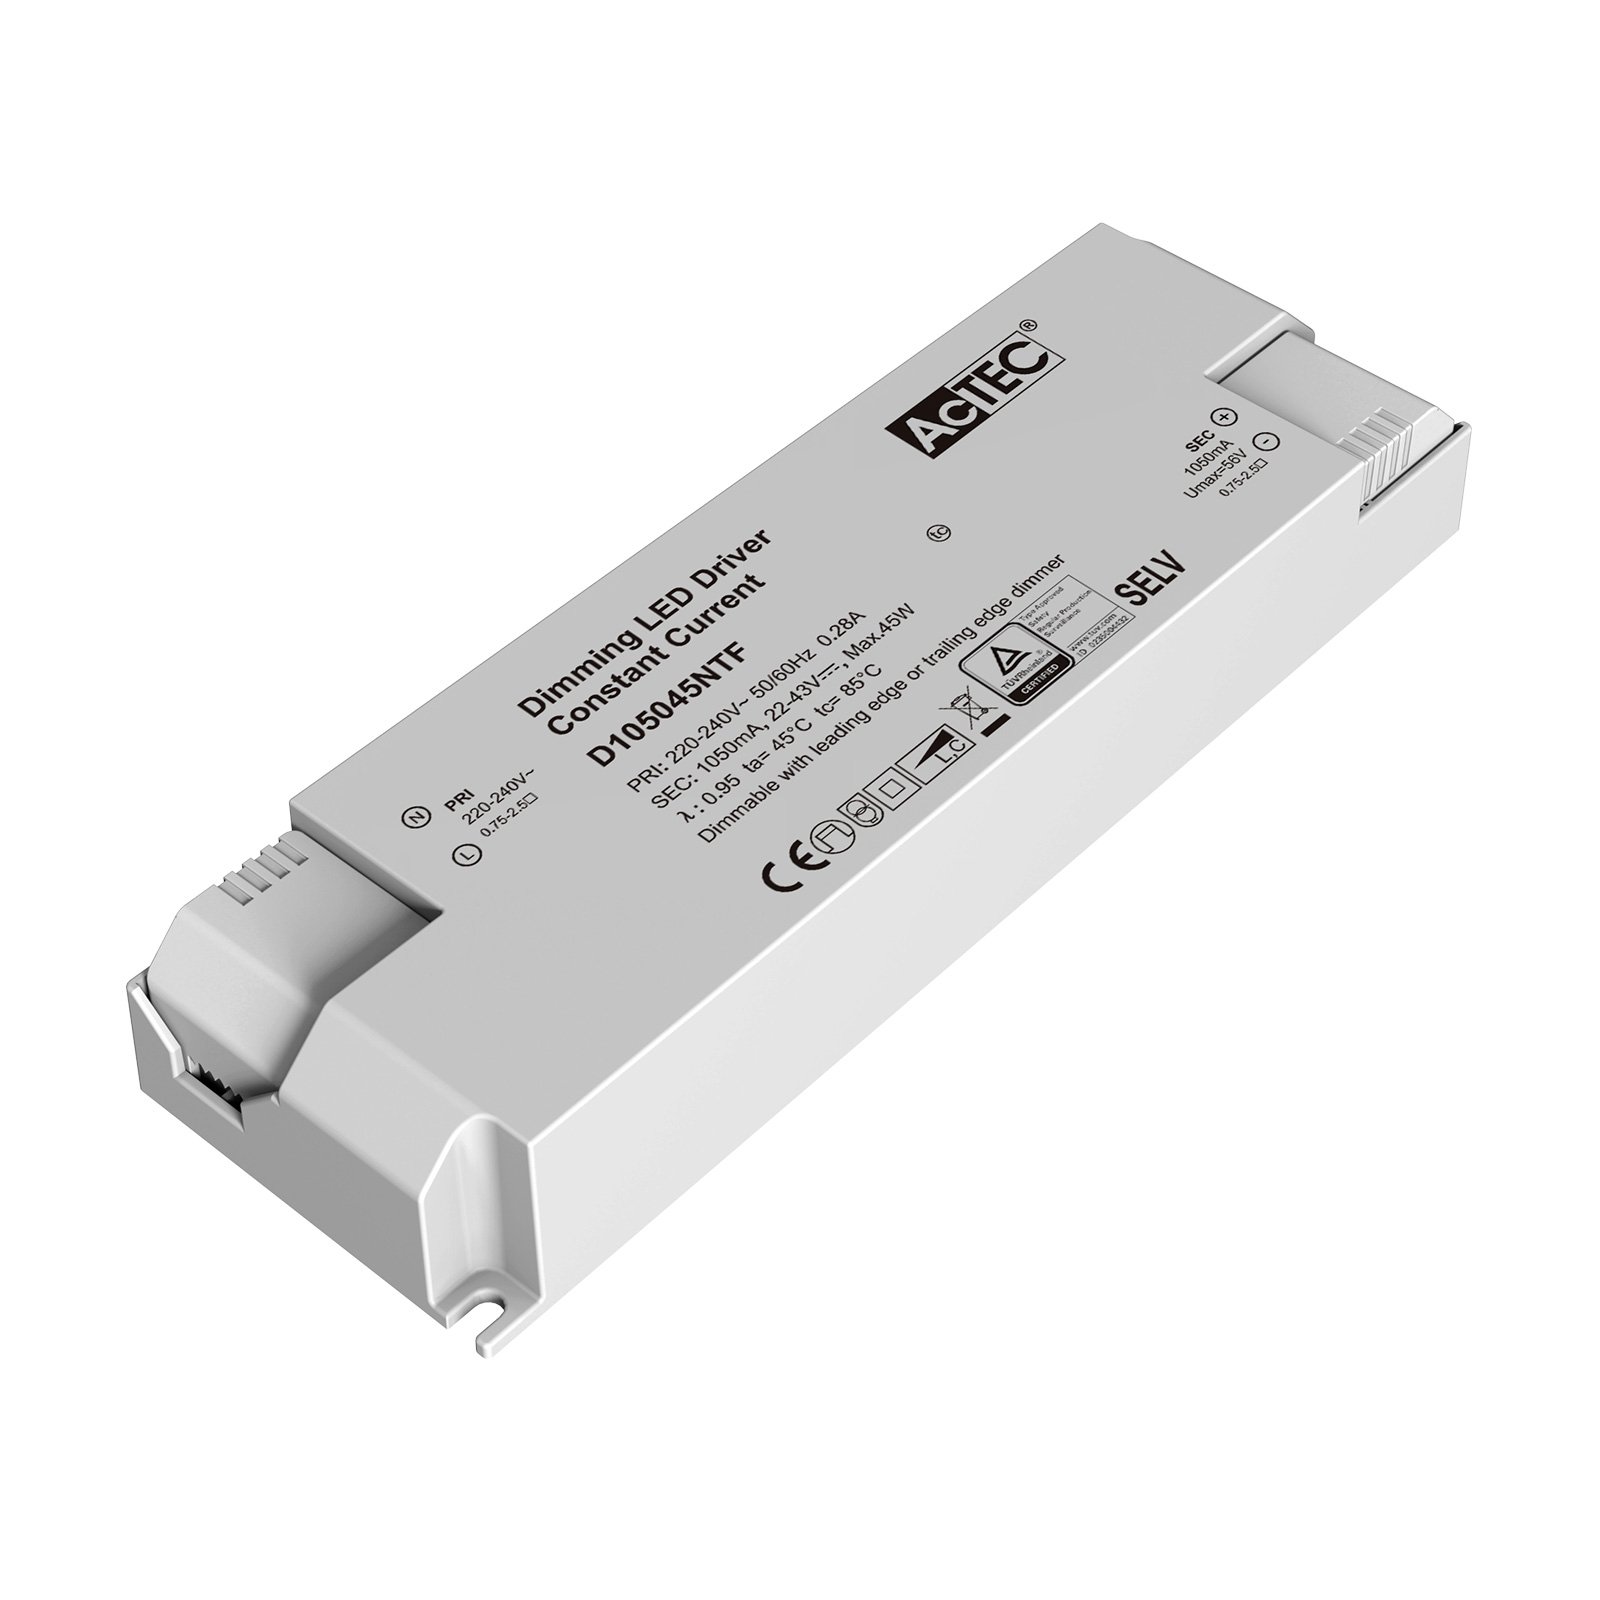 AcTEC Triac -LED-muuntaja maks. 45 W, 1 050 mA